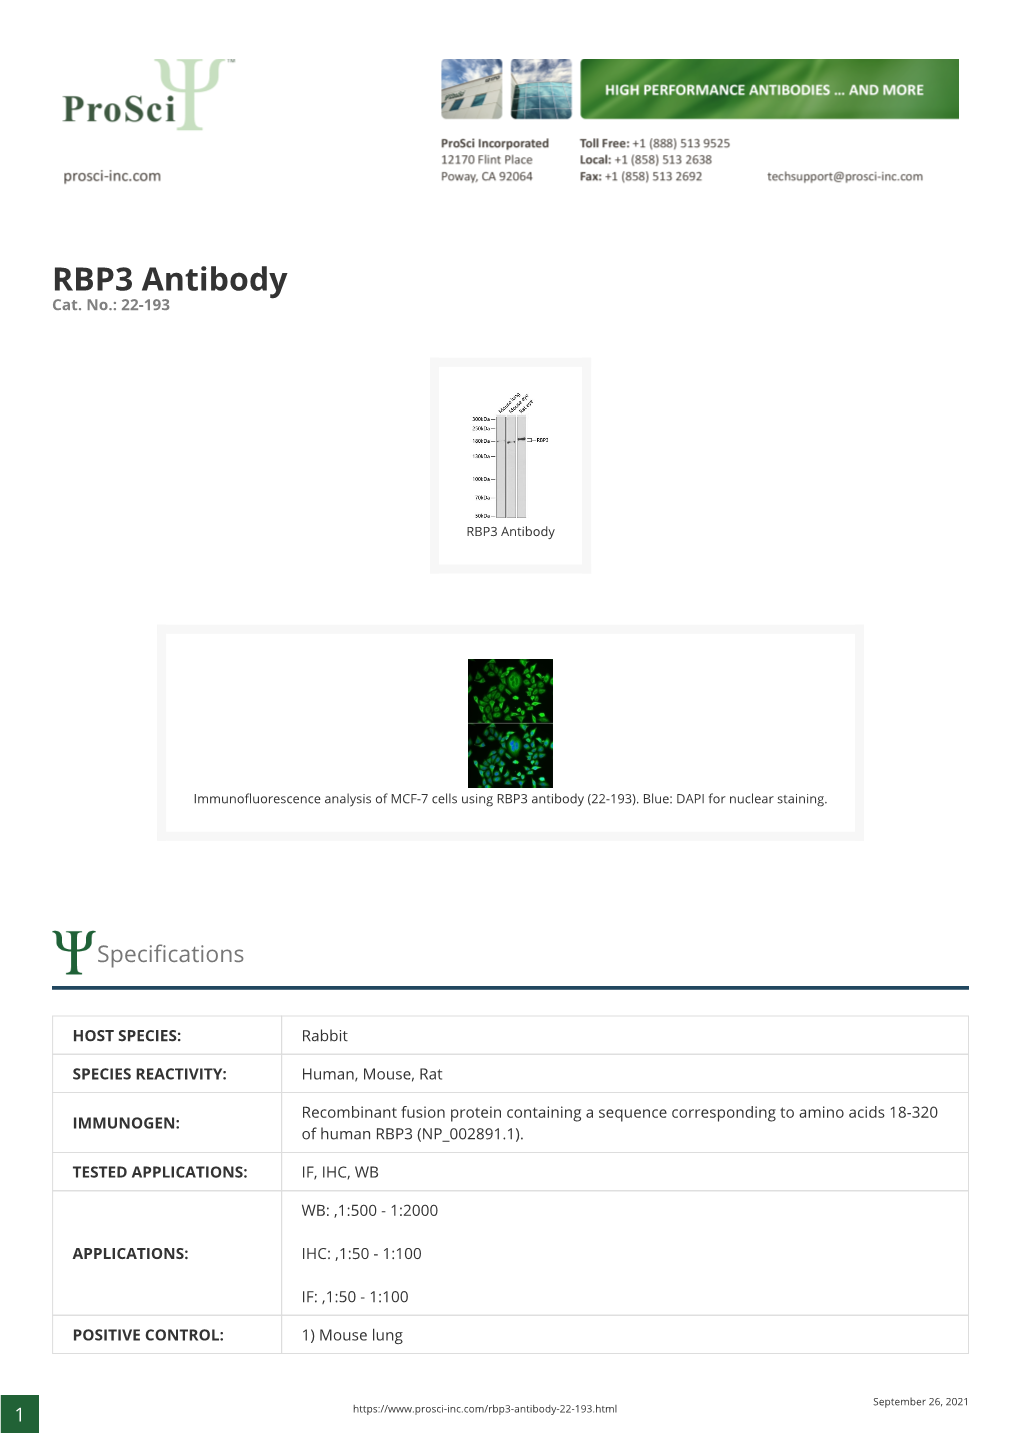 RBP3 Antibody Cat